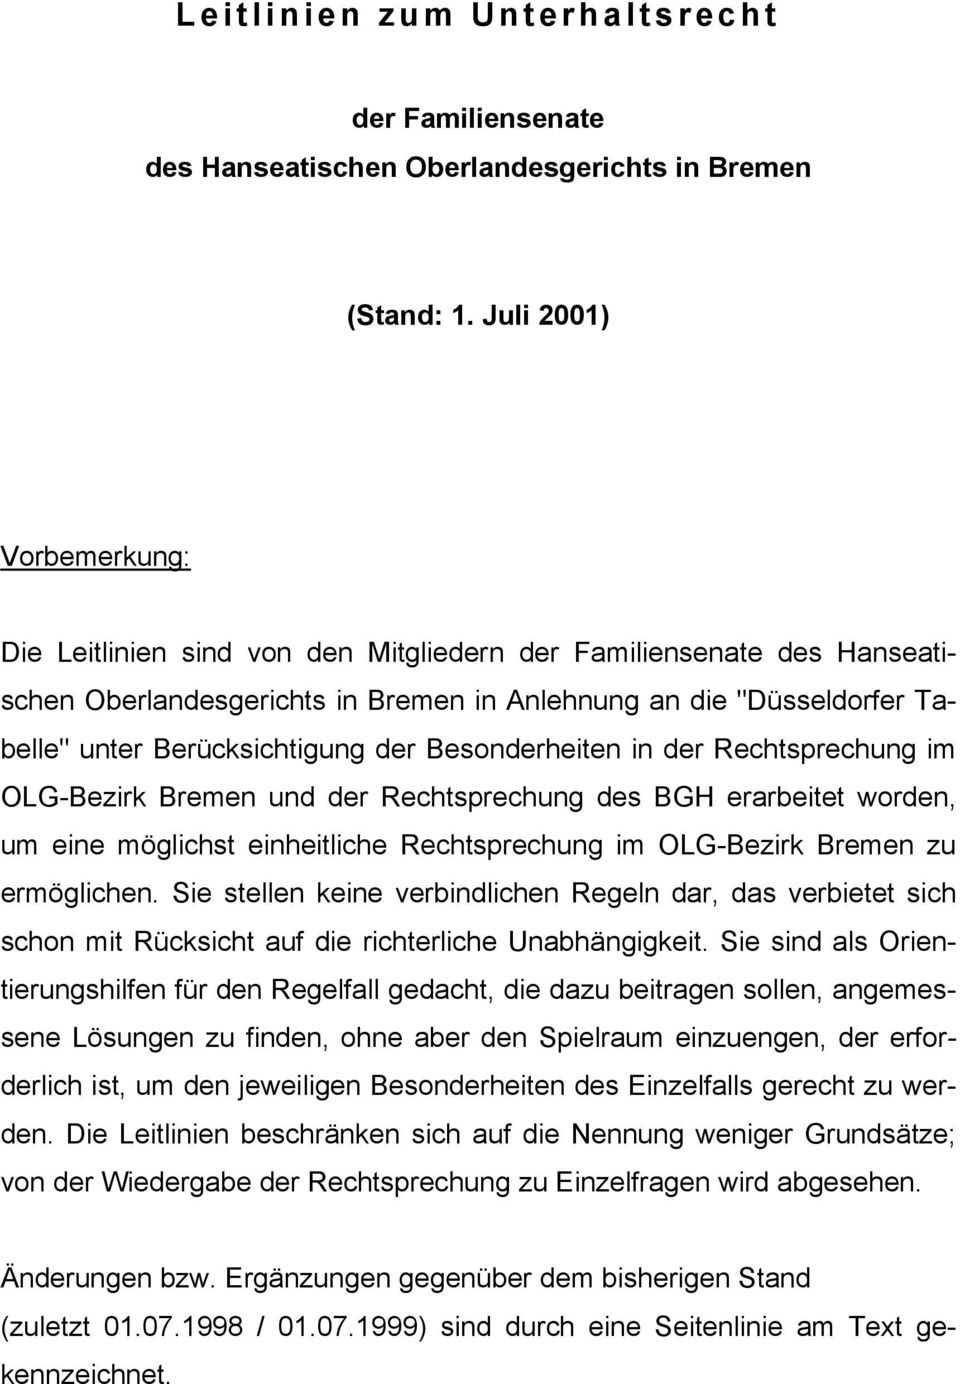 der Besonderheiten in der Rechtsprechung im OLG-Bezirk Bremen und der Rechtsprechung des BGH erarbeitet worden, um eine möglichst einheitliche Rechtsprechung im OLG-Bezirk Bremen zu ermöglichen.